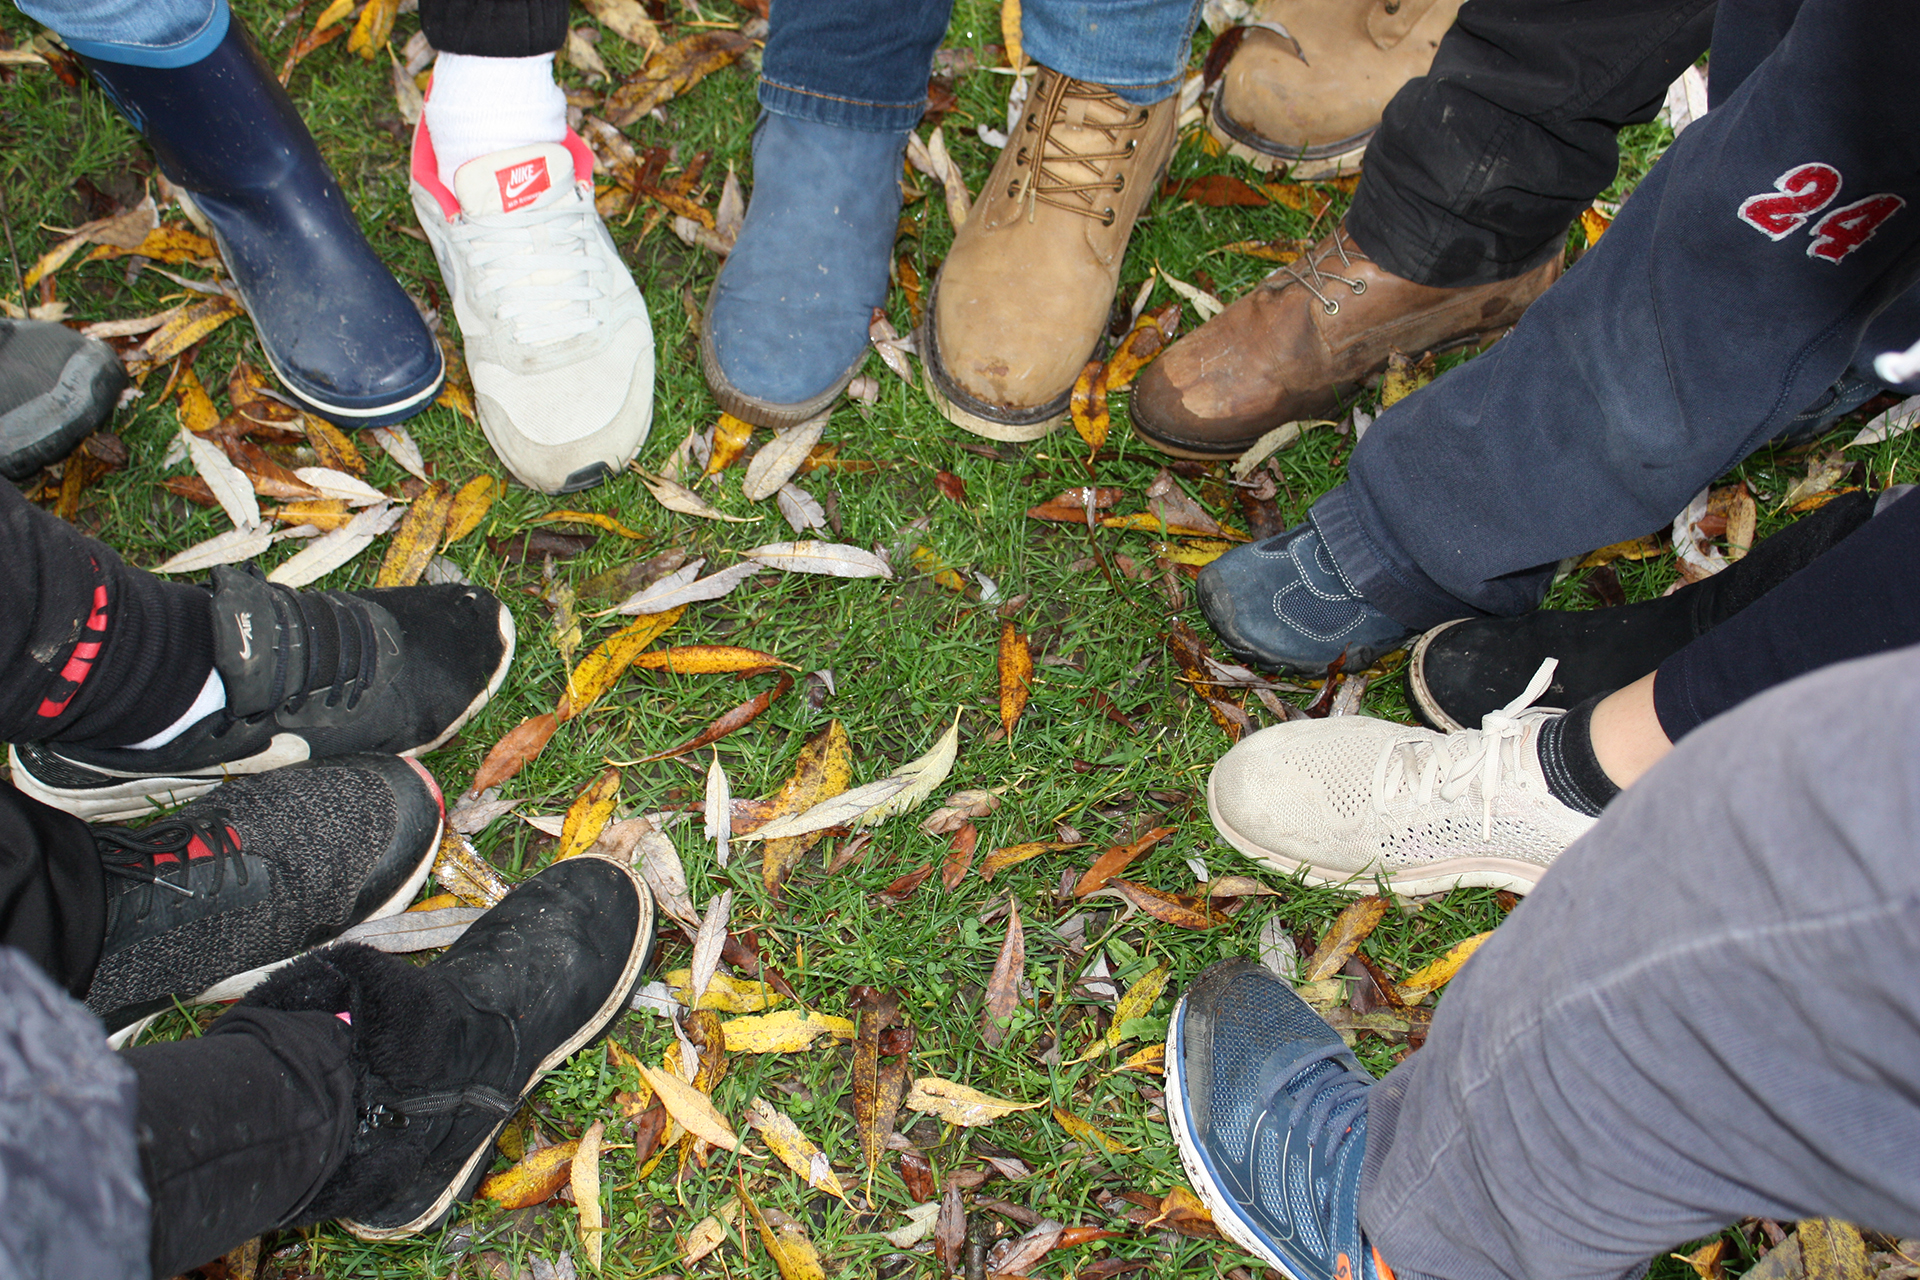 Im Bild: mehr als zehn Personen bilden mit ihren Schuhen einen Kreis auf einer herbstlichen Wiese.